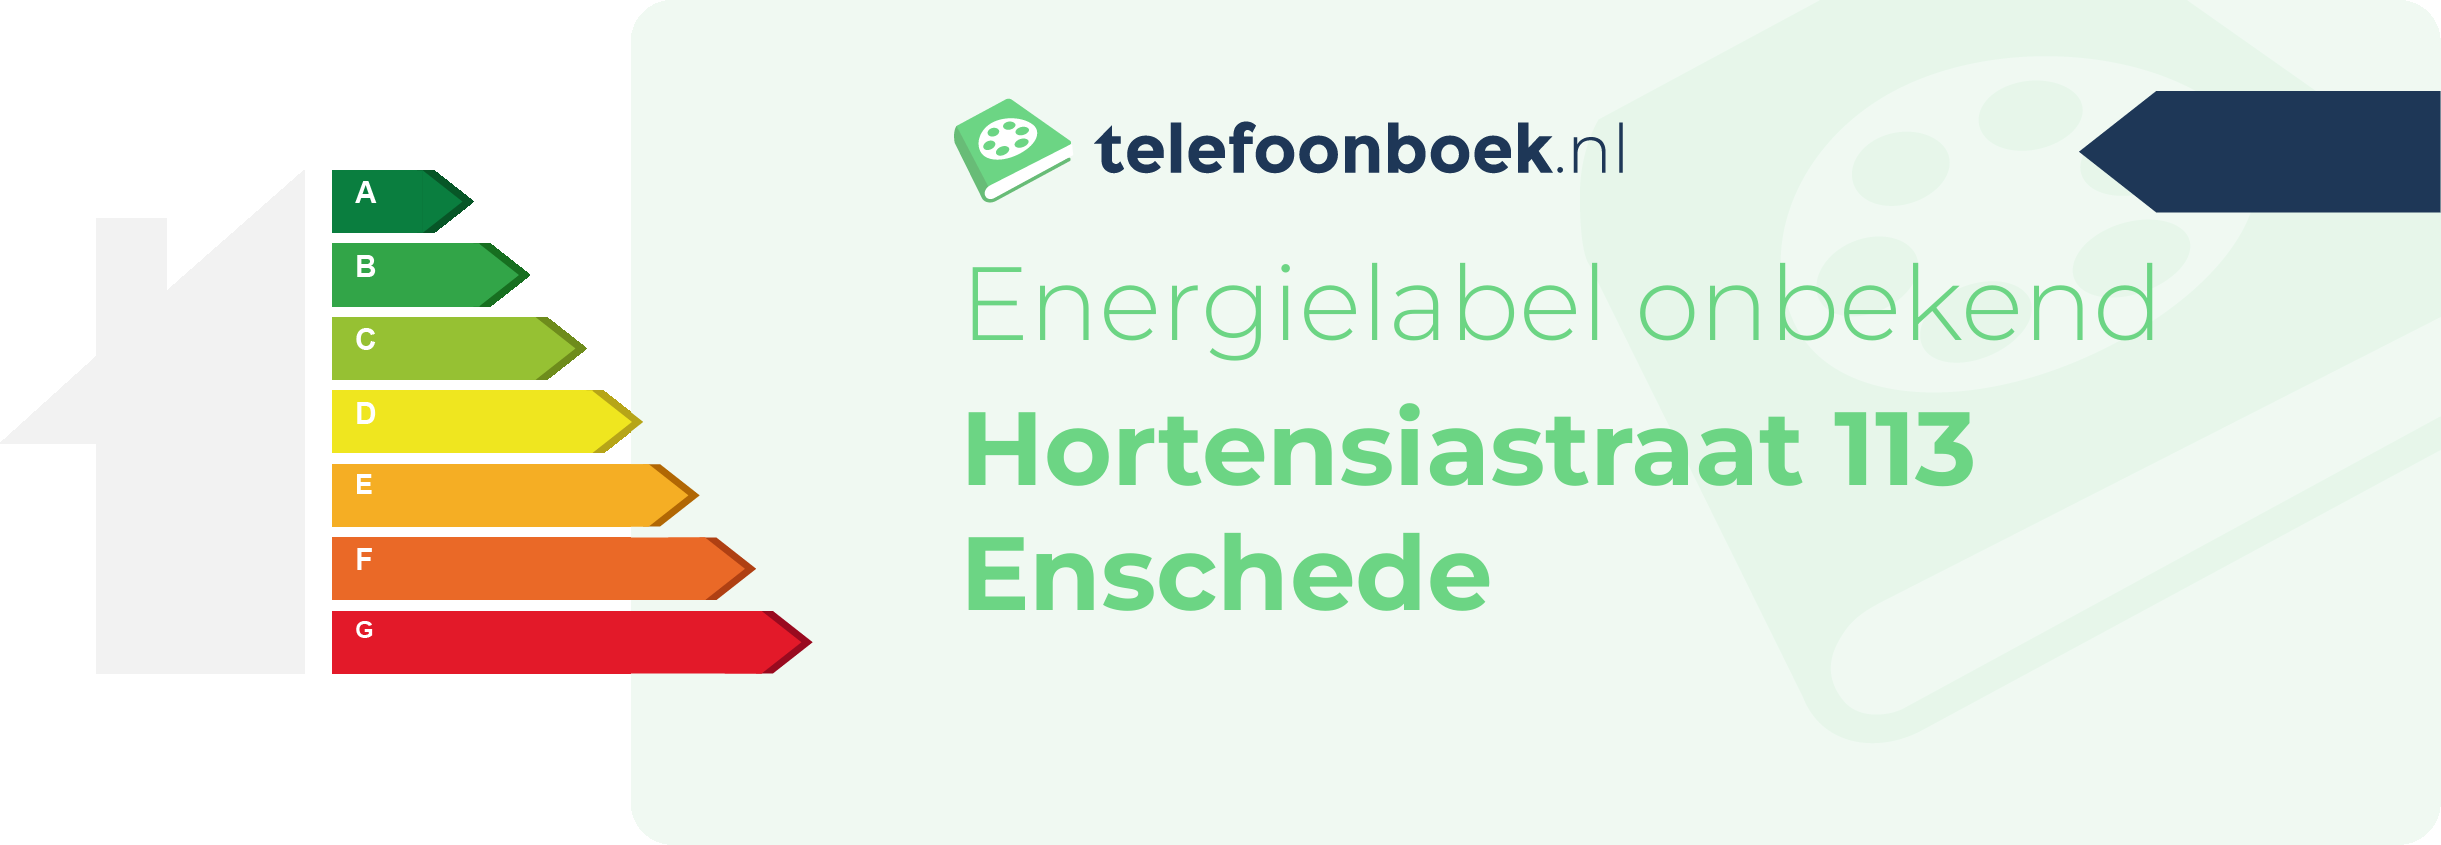 Energielabel Hortensiastraat 113 Enschede